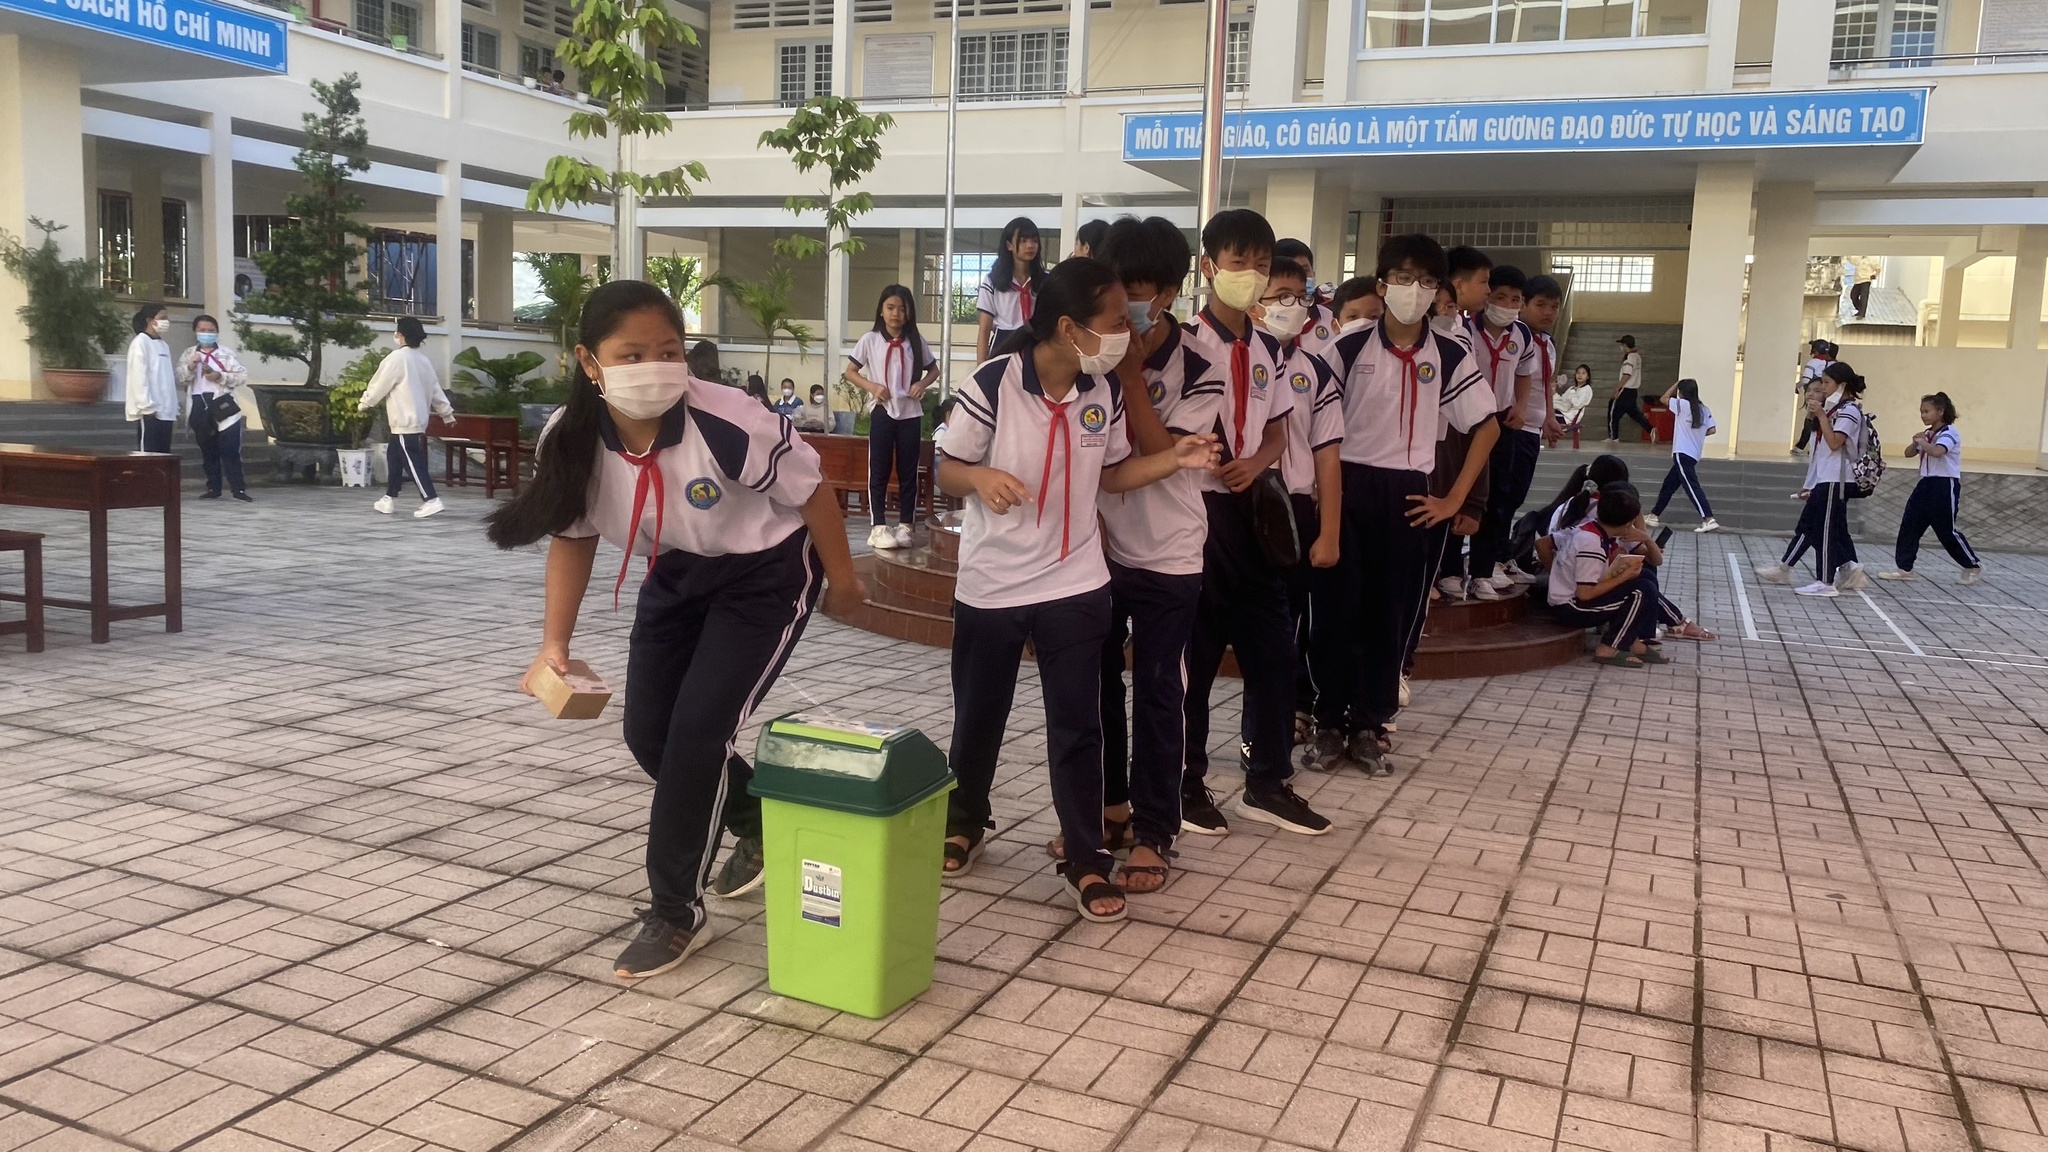 Mô hình 'Trường học giảm nhựa' đầu tiên tại Phú Quốc có gì đặc biệt? - ảnh 5